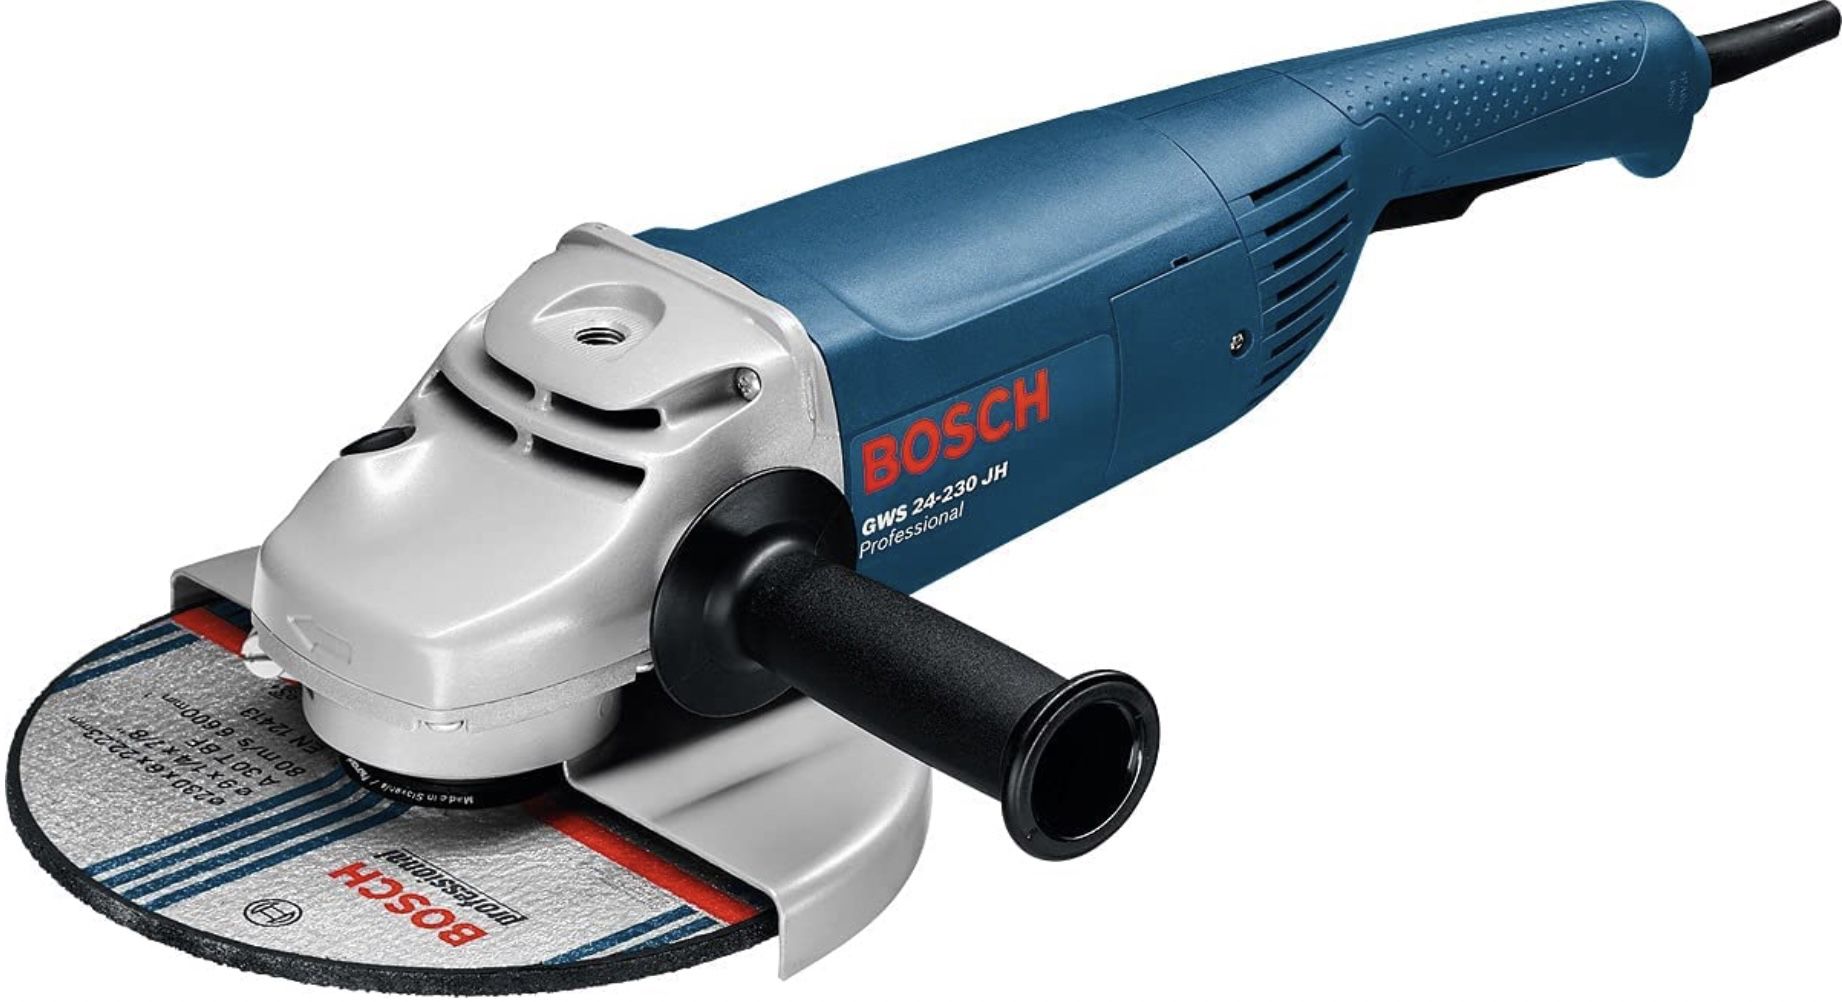 Bosch Professional Winkelschleifer GWS 24 230 JH mit Wiederanlaufschutz für 103,35€ (statt 127€)